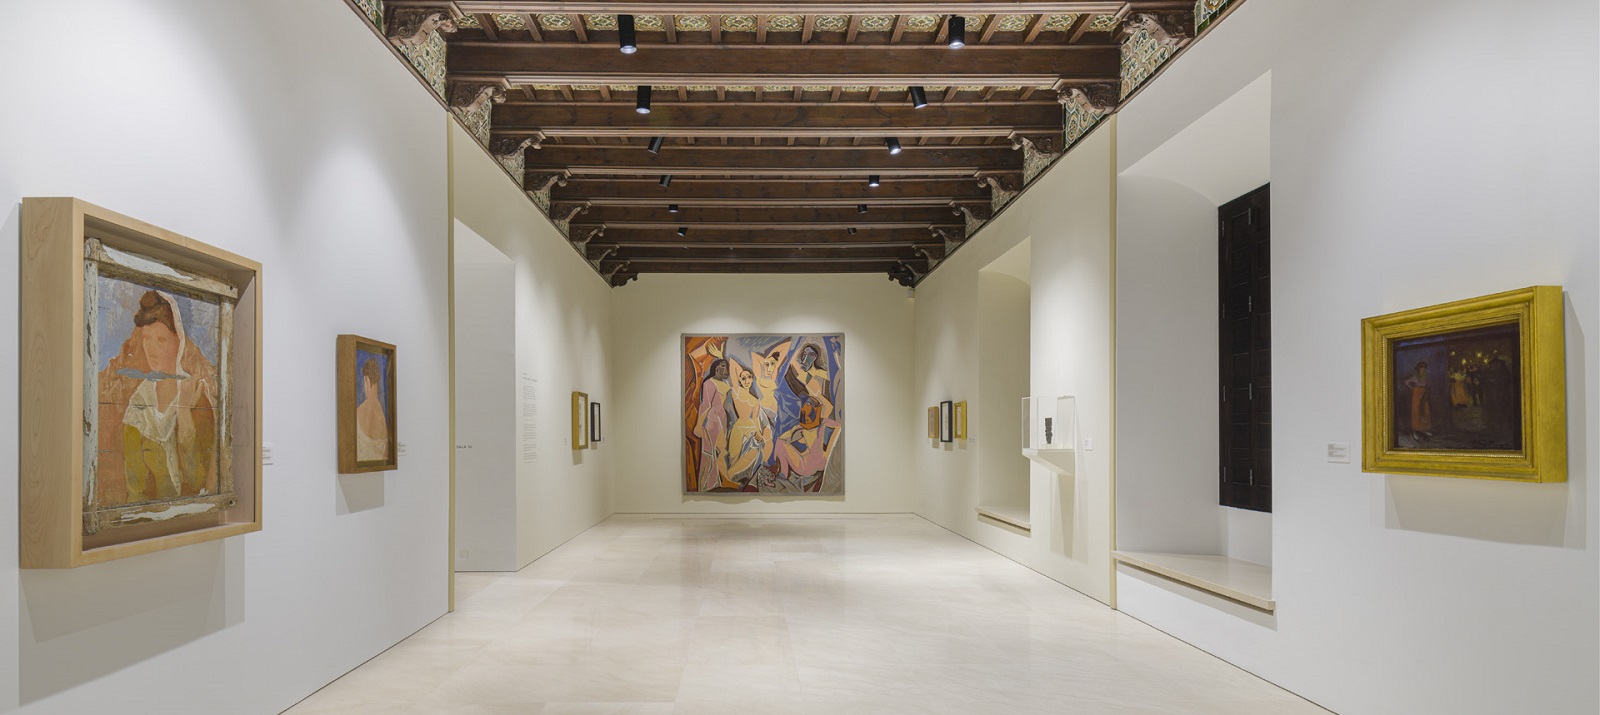 Colección del Museo Picasso Málaga. Sala II.